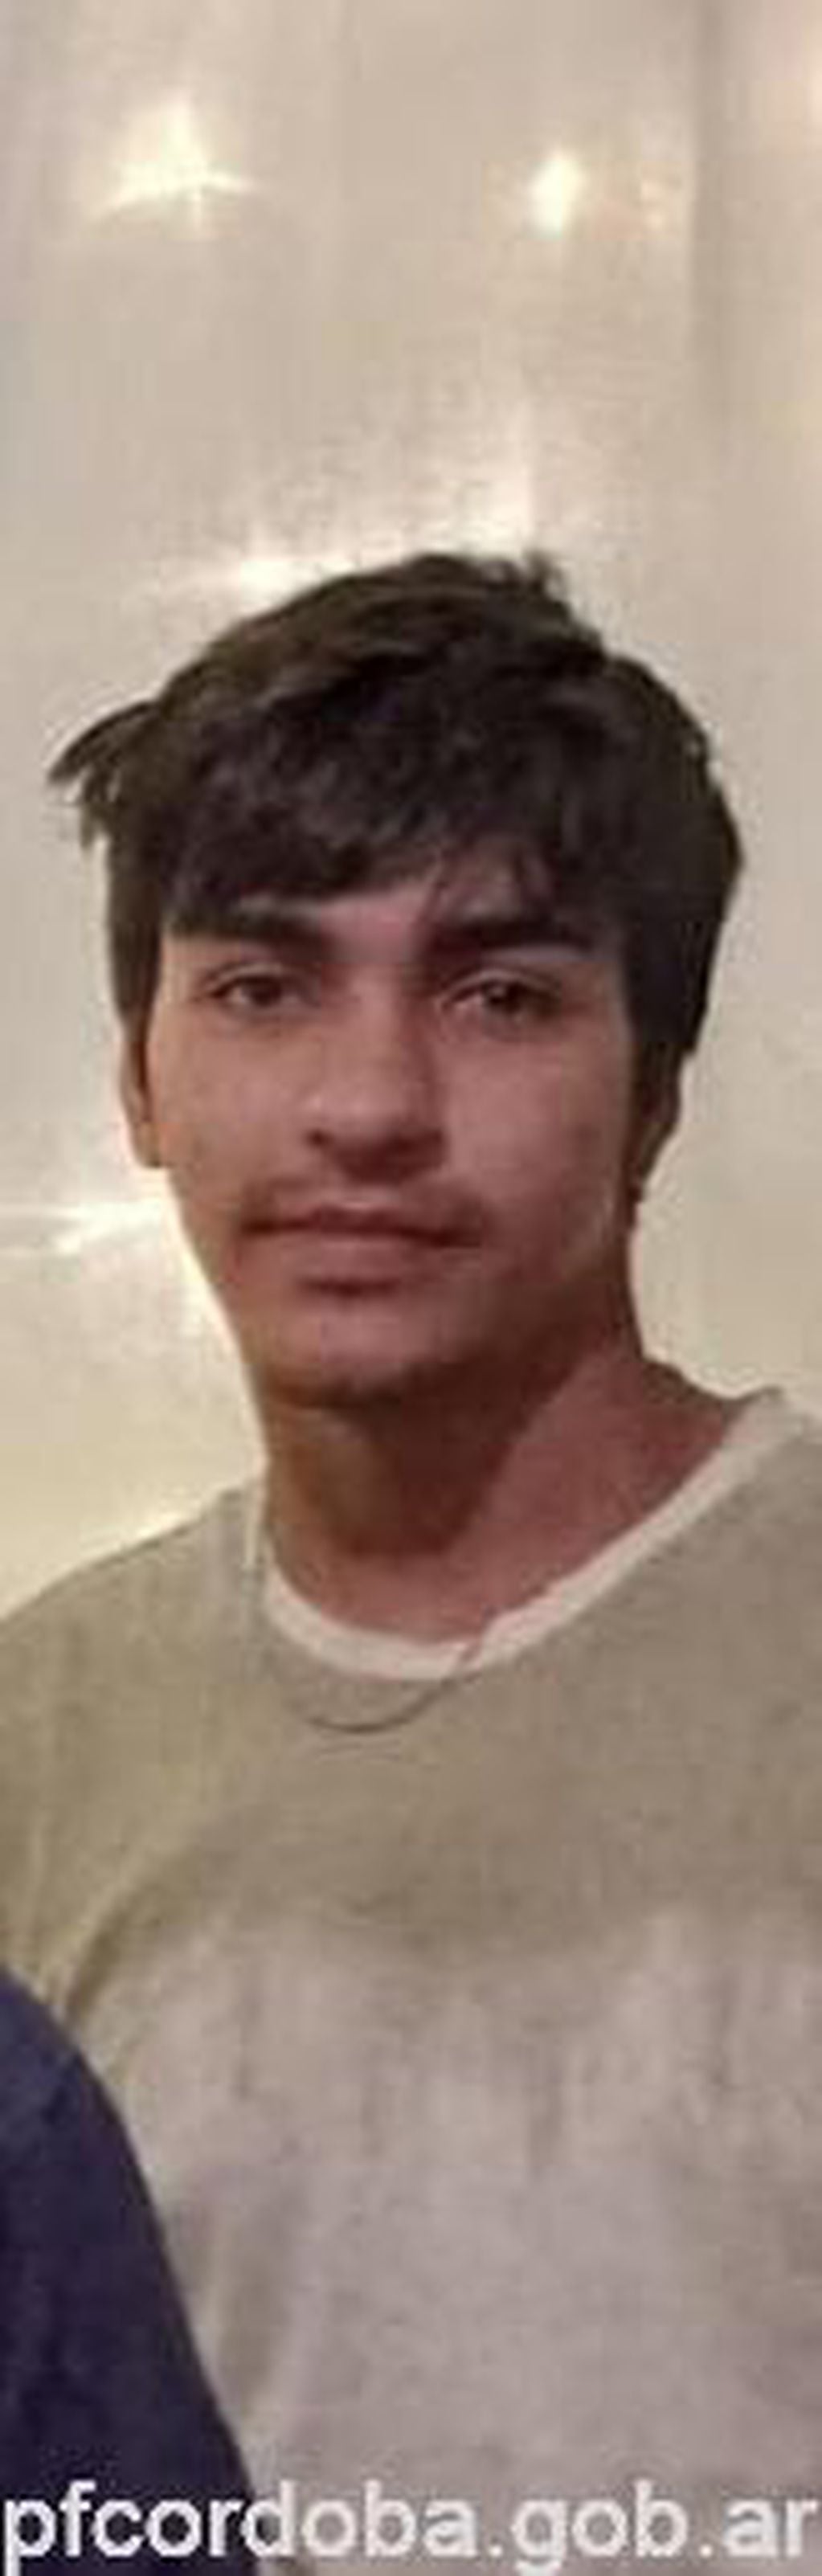 El joven desaparecido en Marcos Juárez.